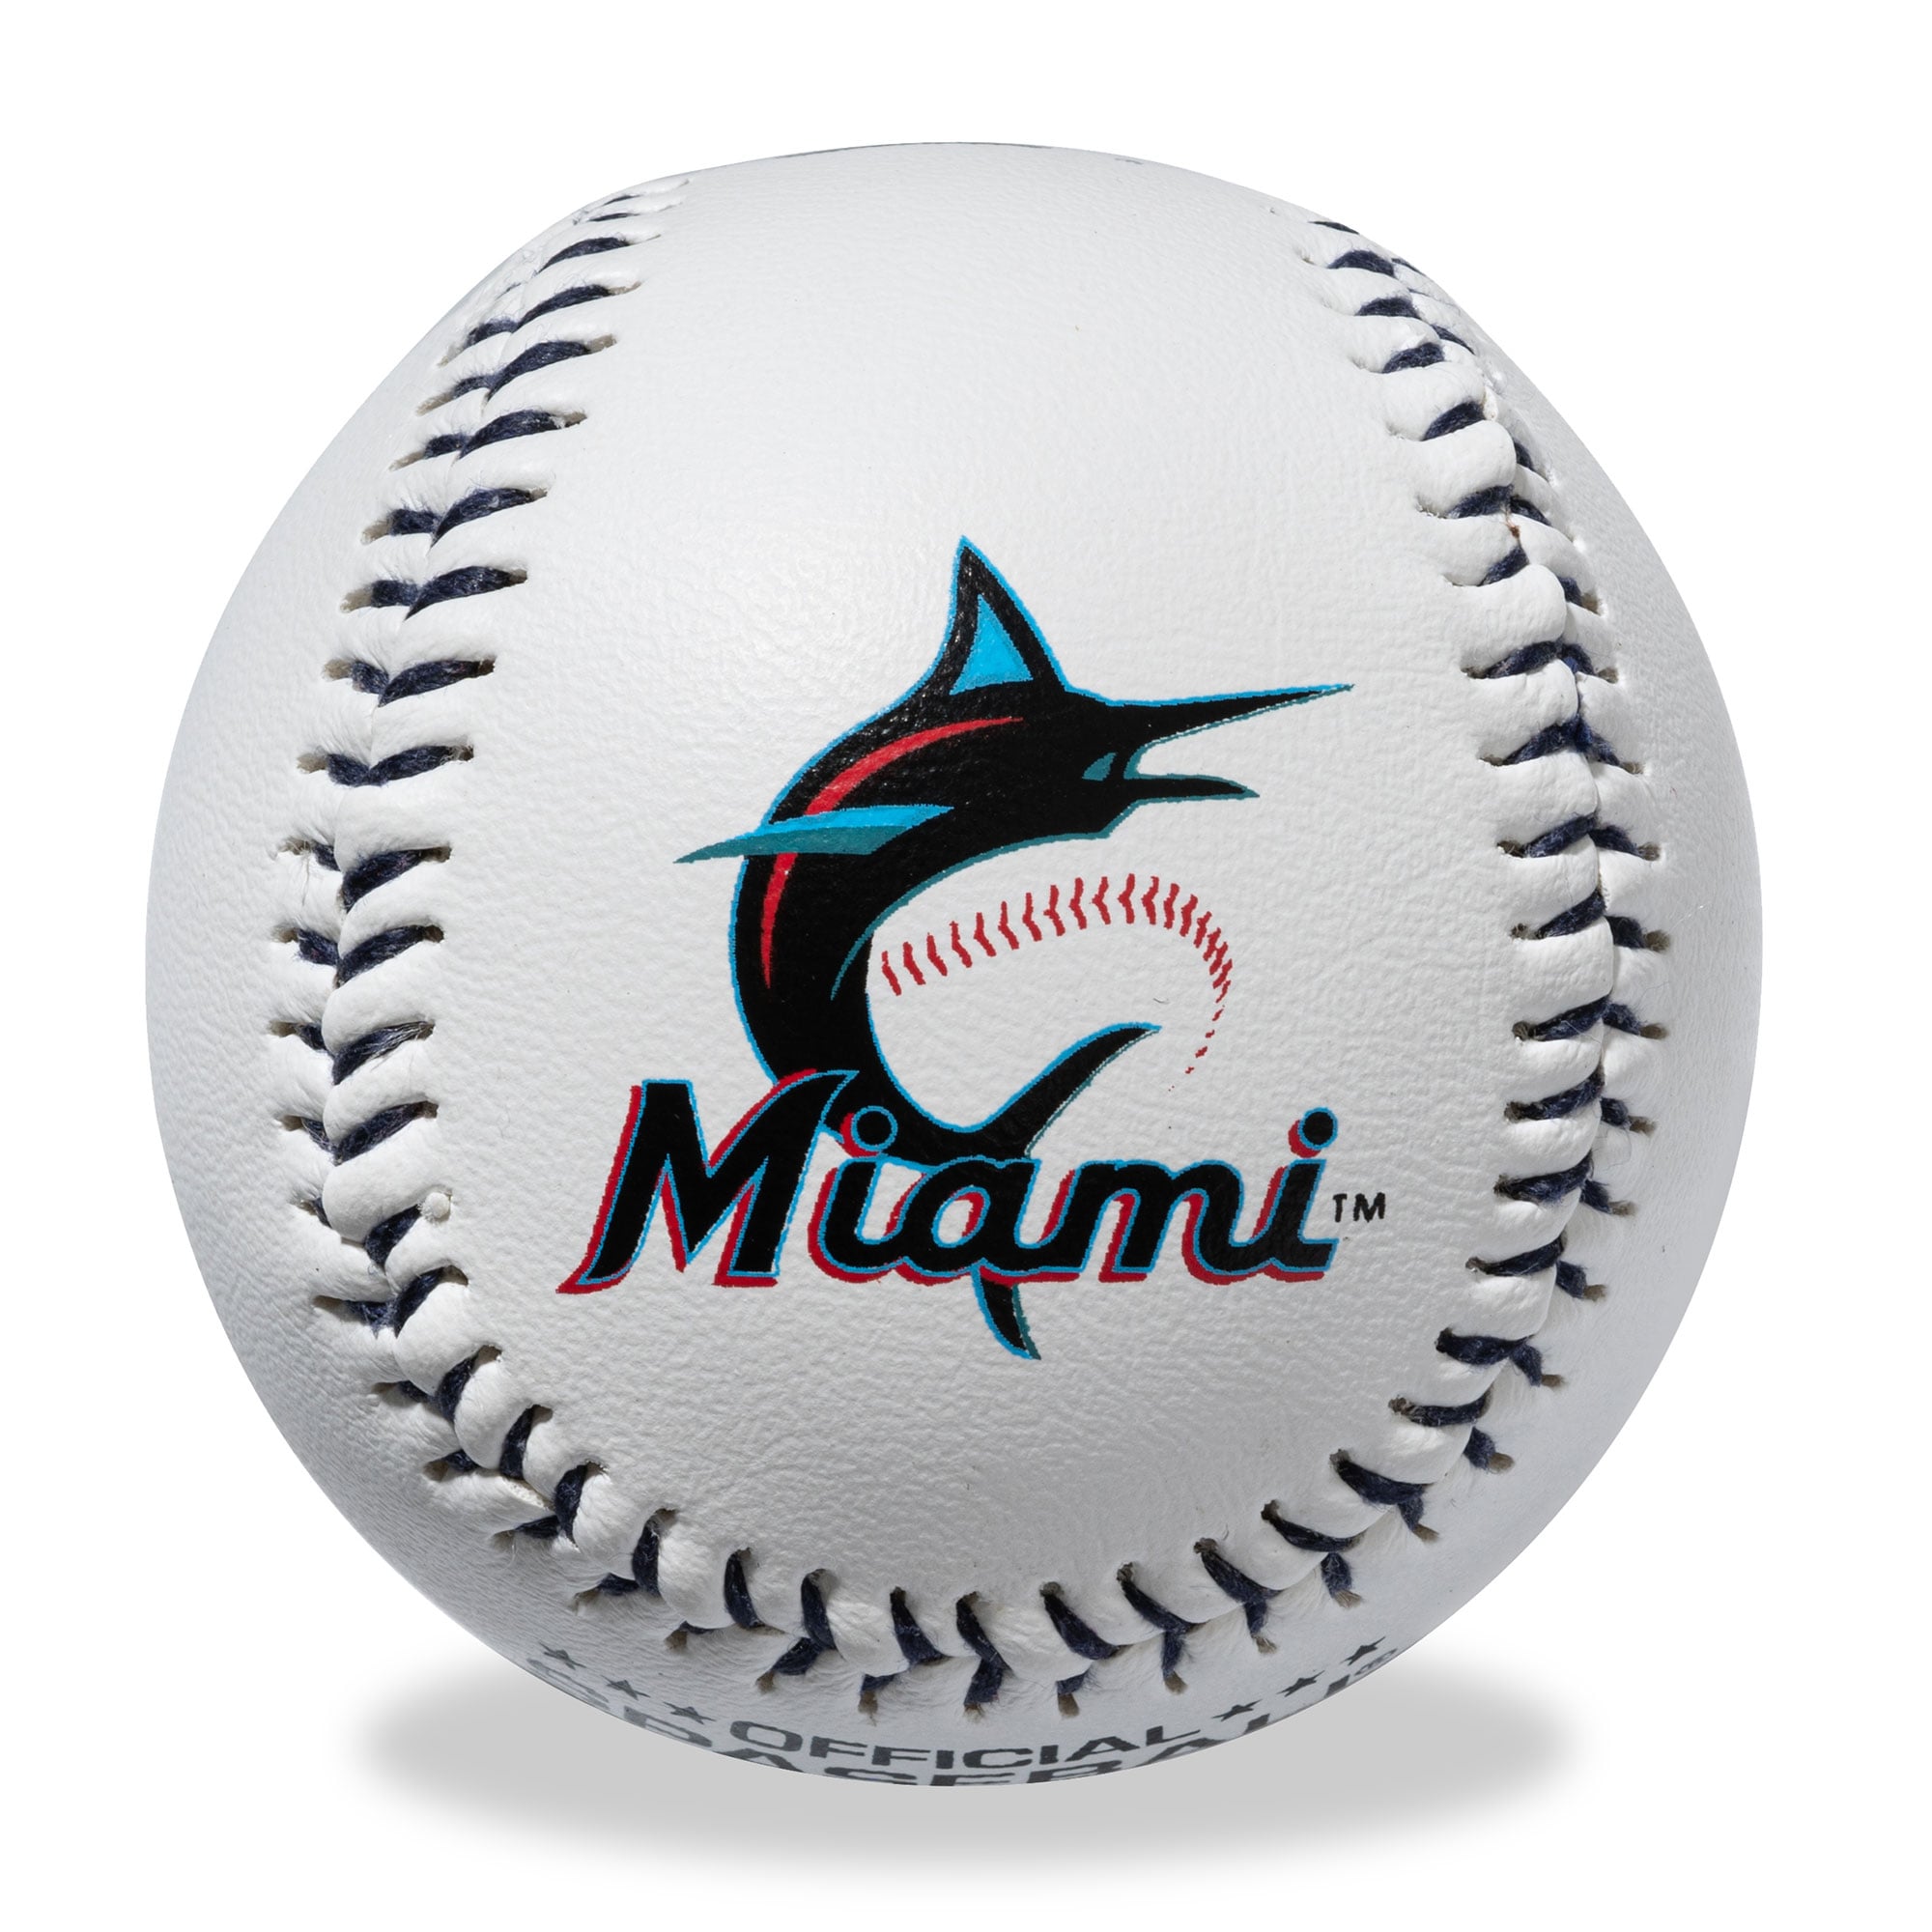 SweetSpot Baseball Miami Marlins Senior 32 Bat and Spaceball Combo - image 5 of 7